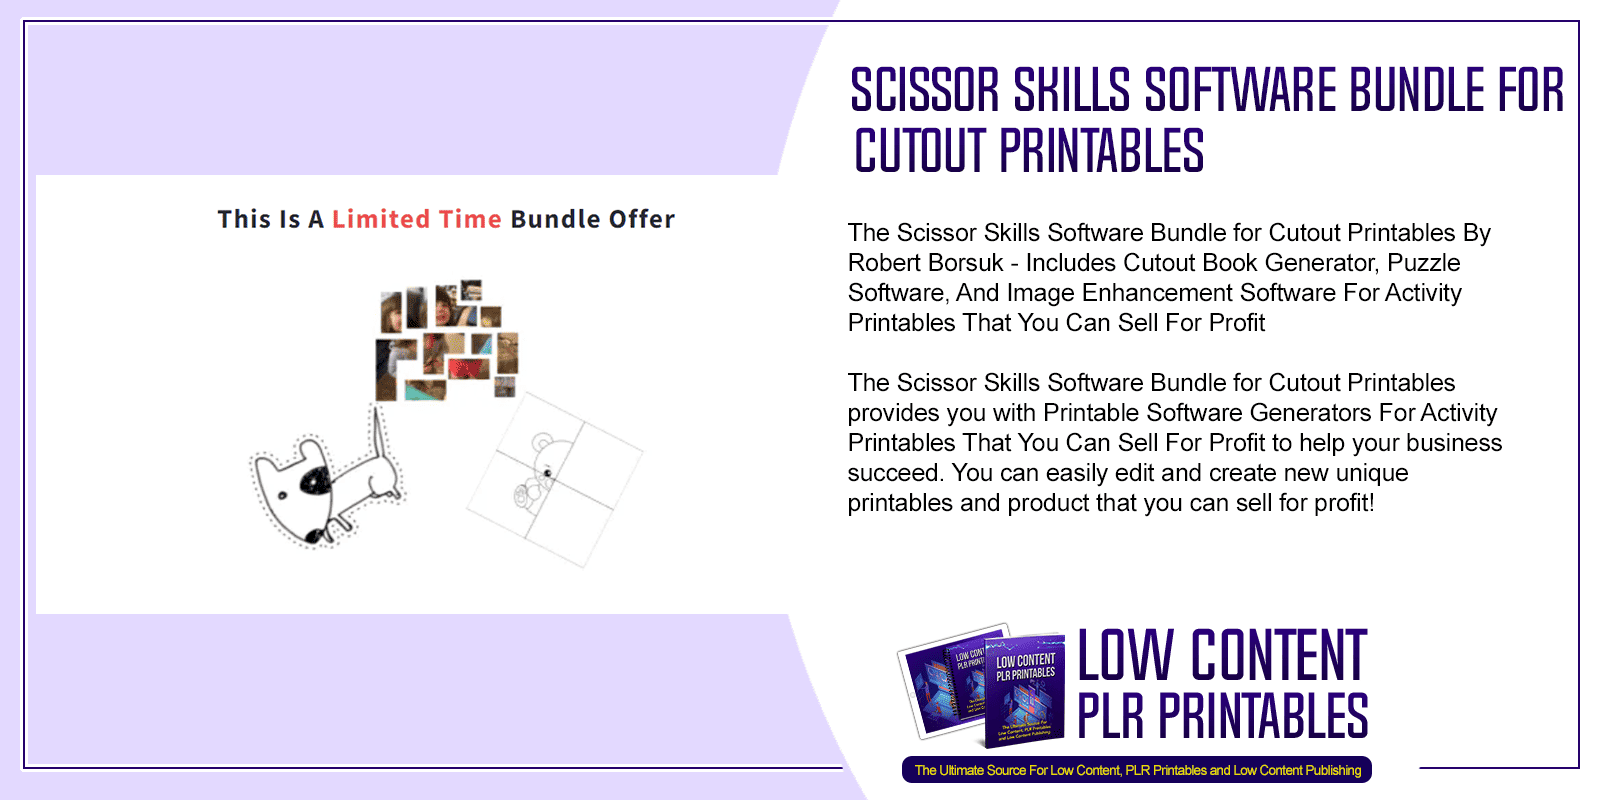 Scissor Skills Software Bundle for Cutout Printables